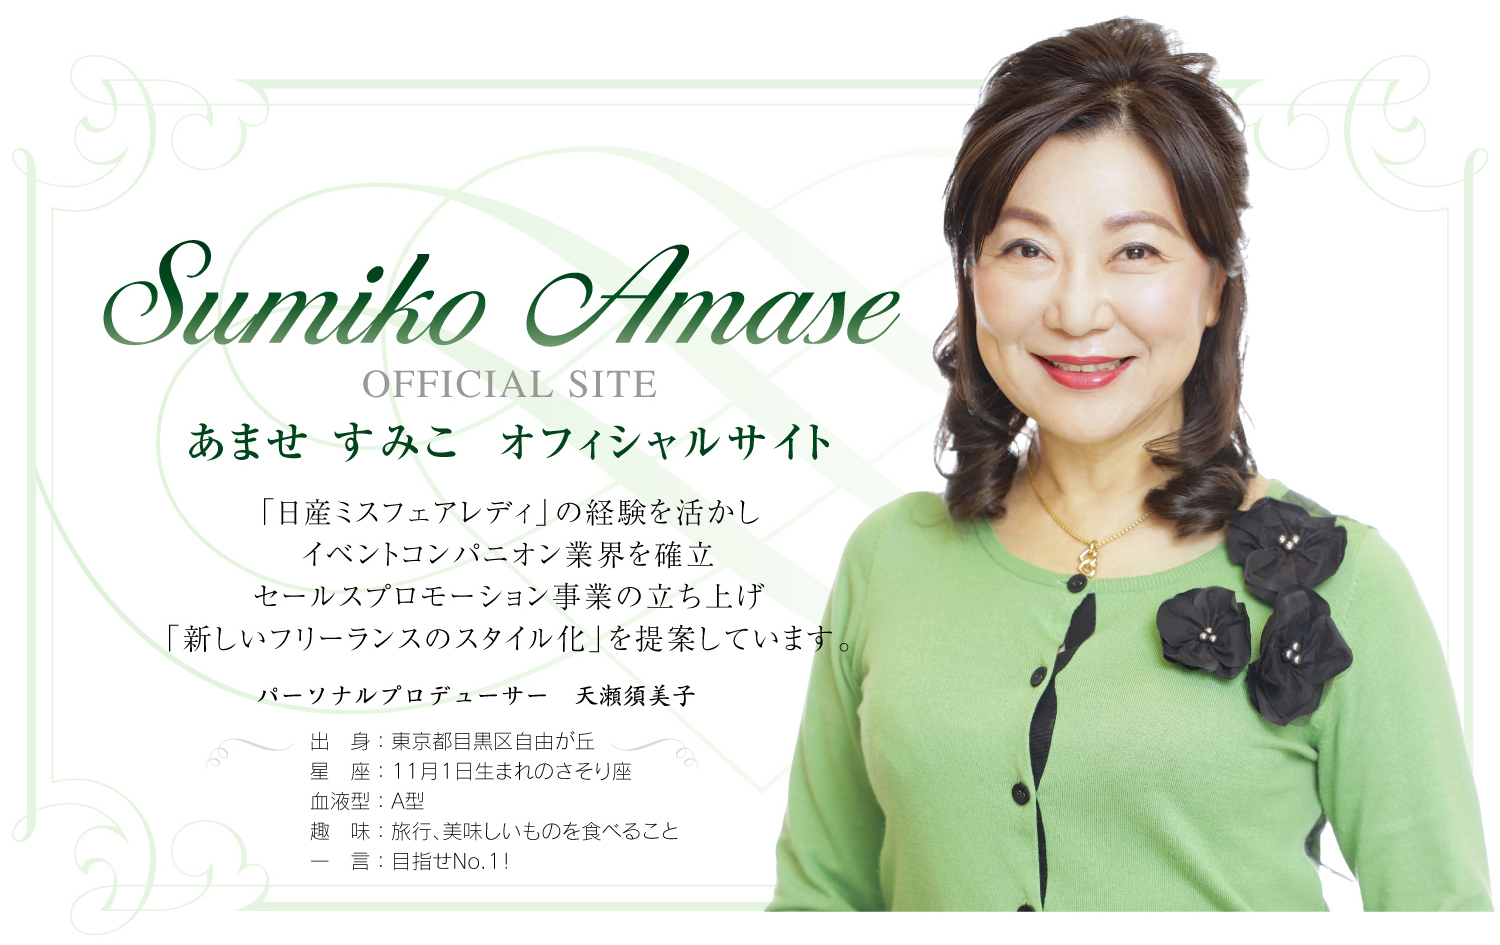 Sumiko Amase OFFICIAL SITE あませ すみこ オフィシャルサイト　「日産ミスフェアレディ」の経験を活かし イベントコンパニオン業界を確立 セールスプロモーション事業の立ち上げ 「新しいフリーランスのスタイル化」を提案しています。 パーソナルプロデューサー 天瀬須美子 出身：東京都目黒区自由が丘 星座：11月1日生まれのさそり座 血液型：A型 趣味：旅行、美味しいものを食べること 一言：目指せNo.1！